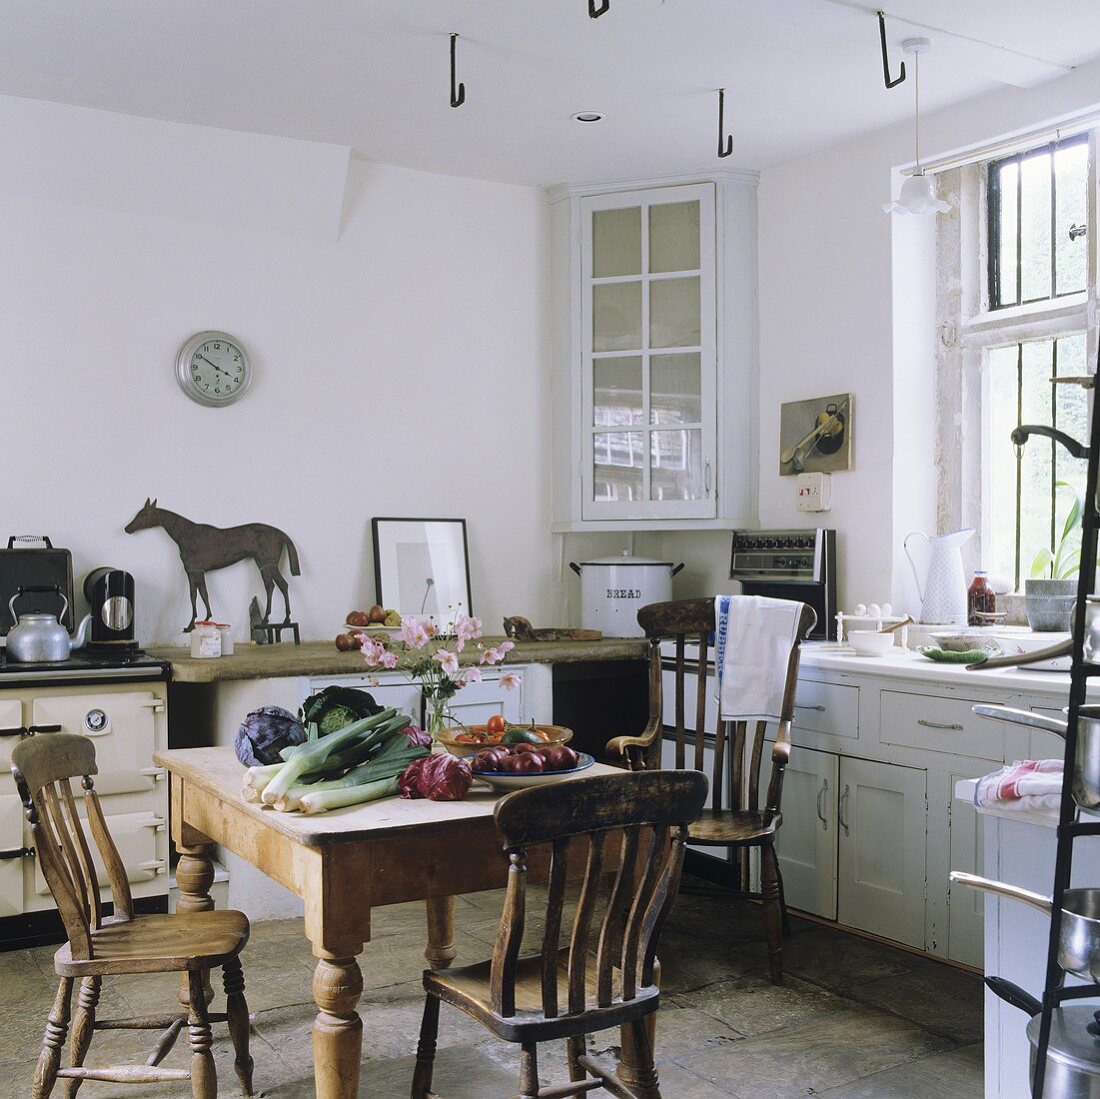 Essensvorbereitung auf rustikalem Küchentisch im englischen Landhaus